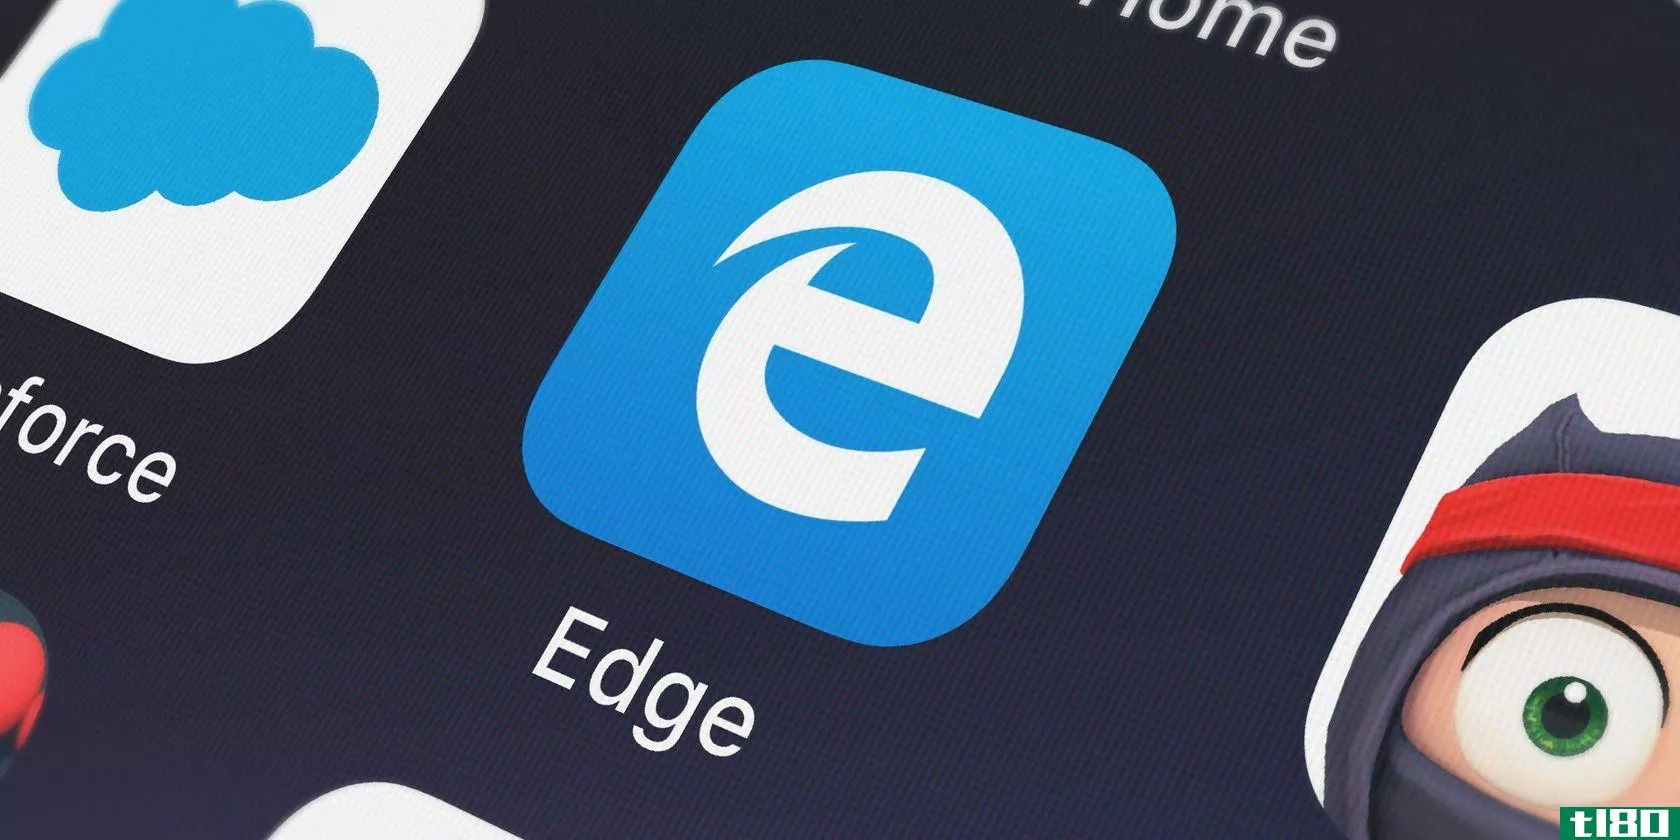 An Edge app